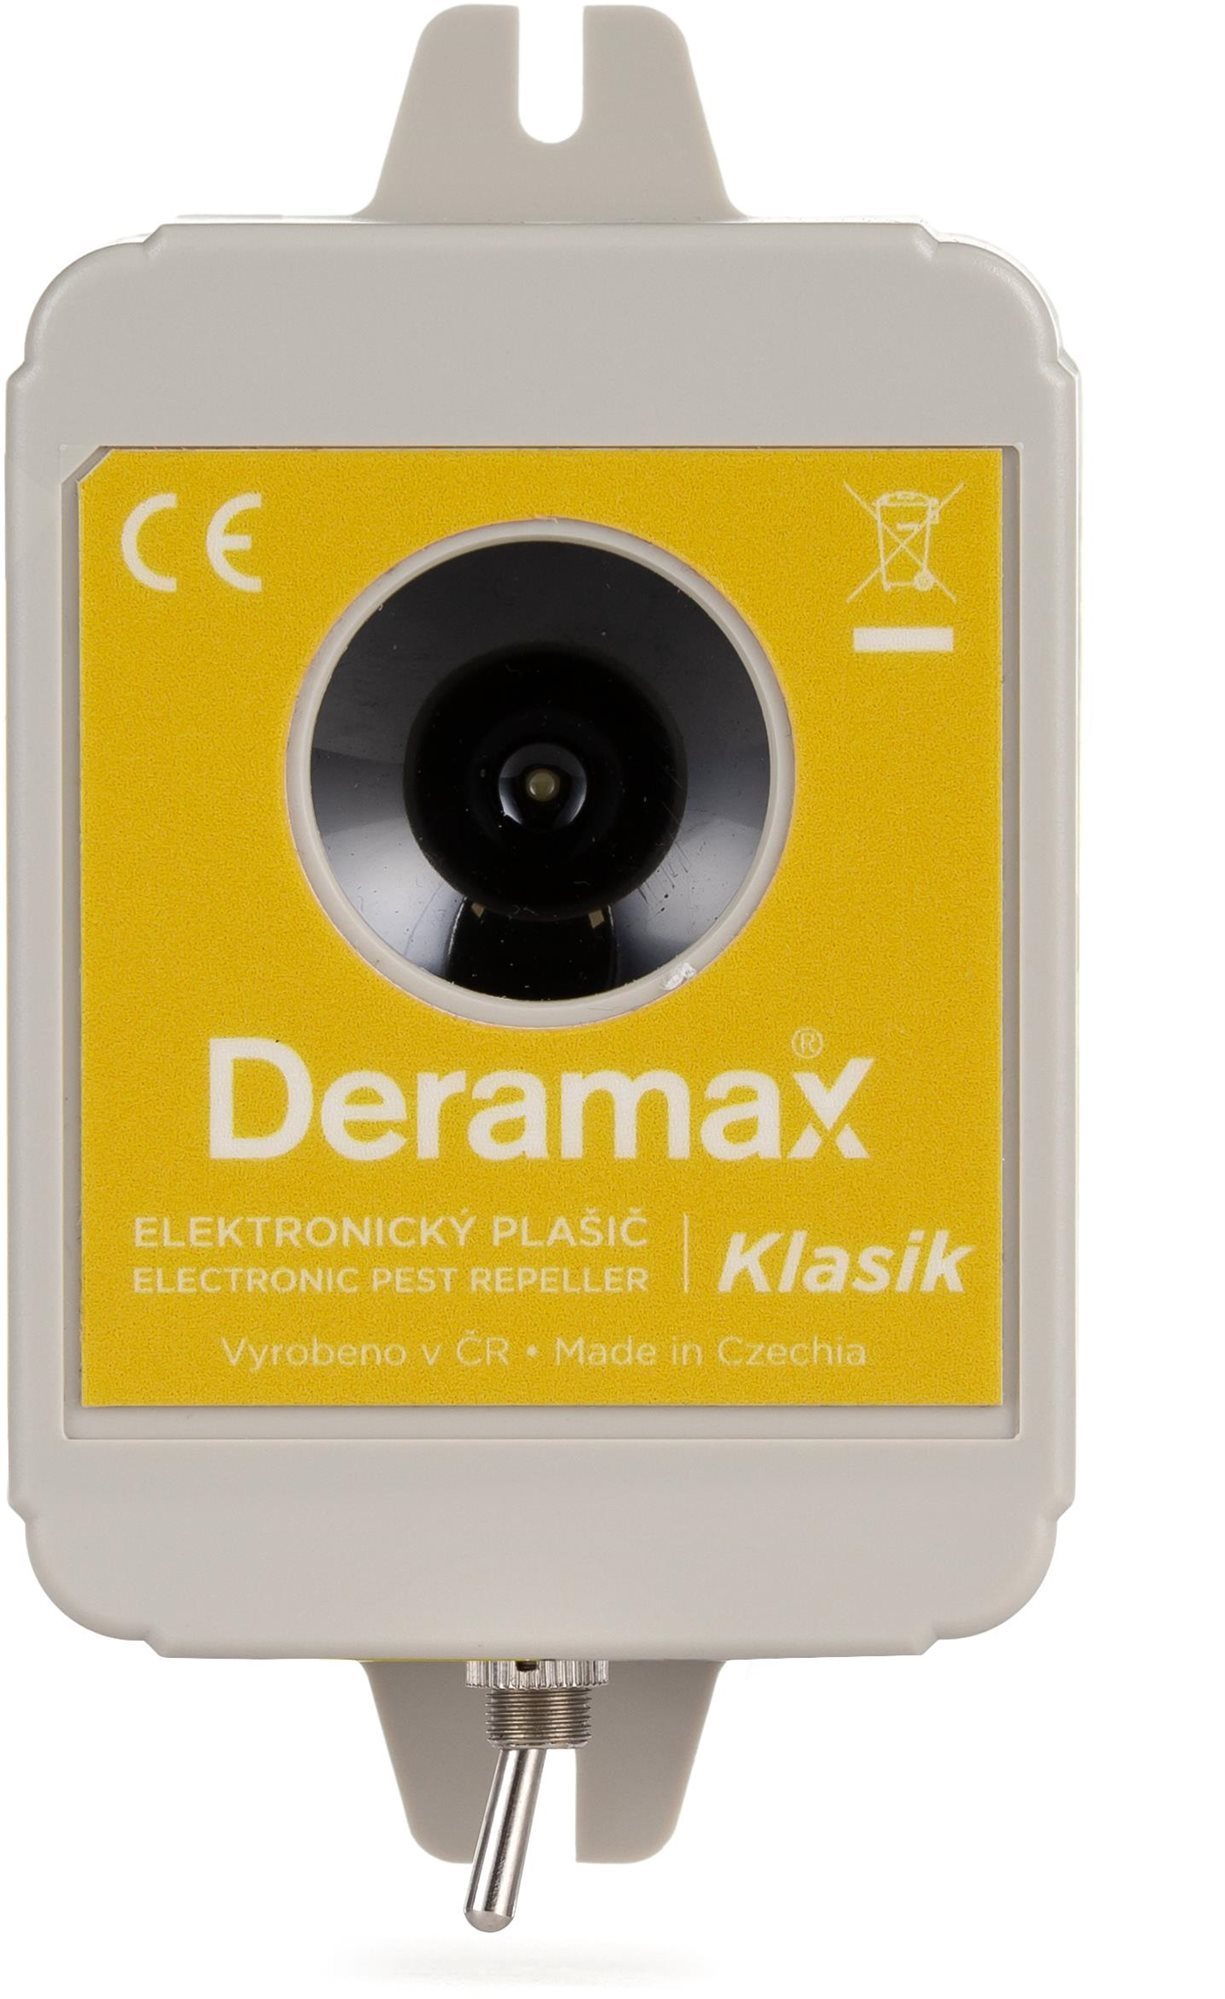 Deramax-Klasik Ultrahangos nyest- és rágcsálóriasztó